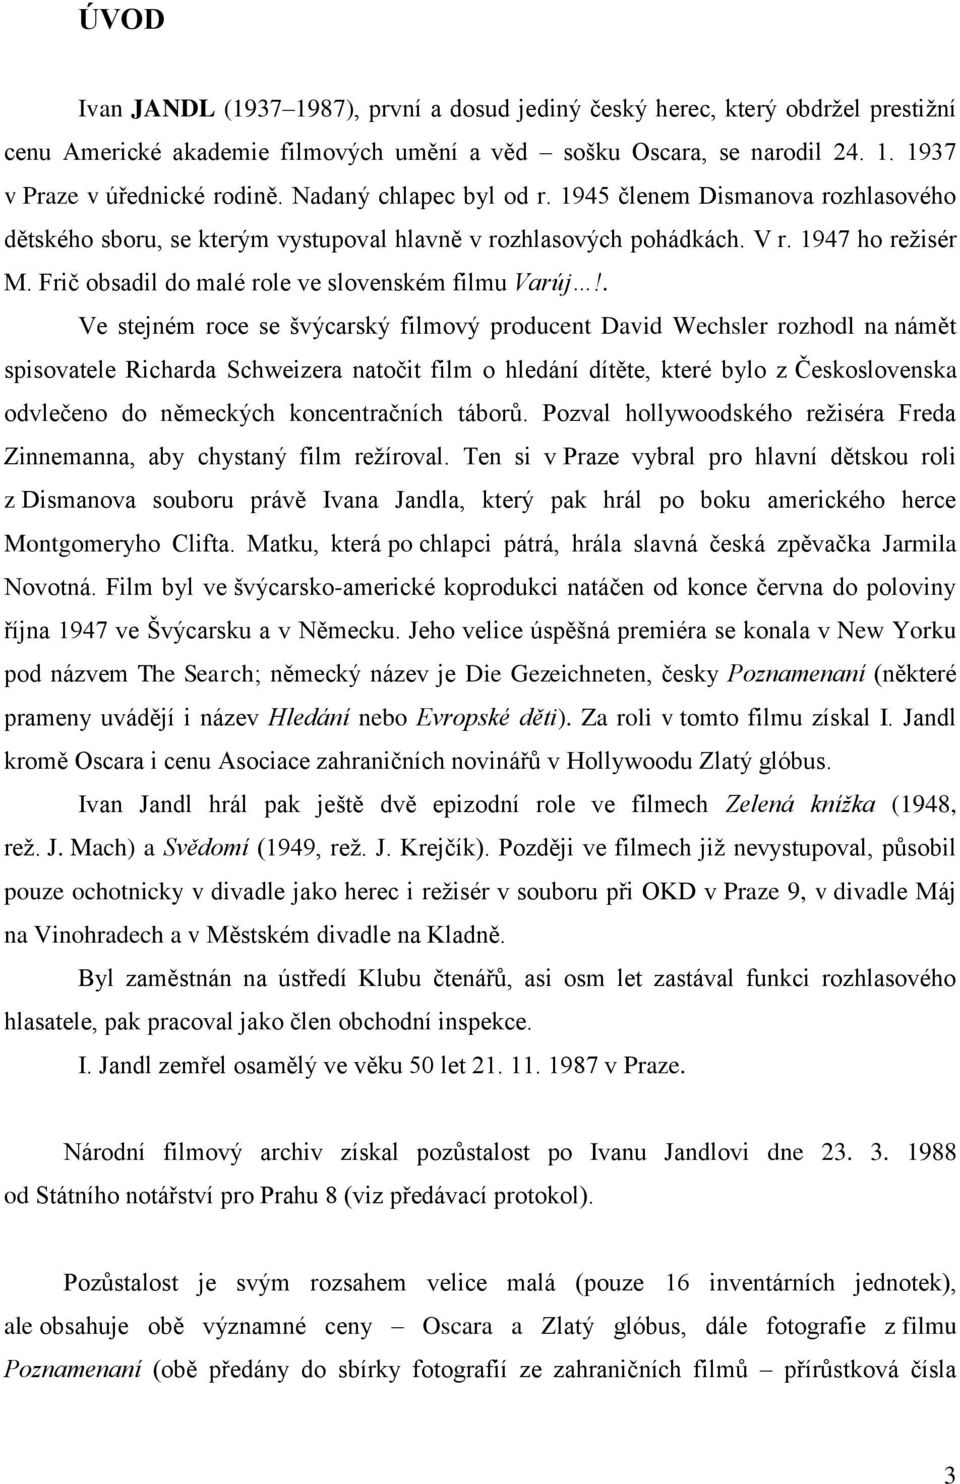 Frič obsadil do malé role ve slovenském filmu Varúj!